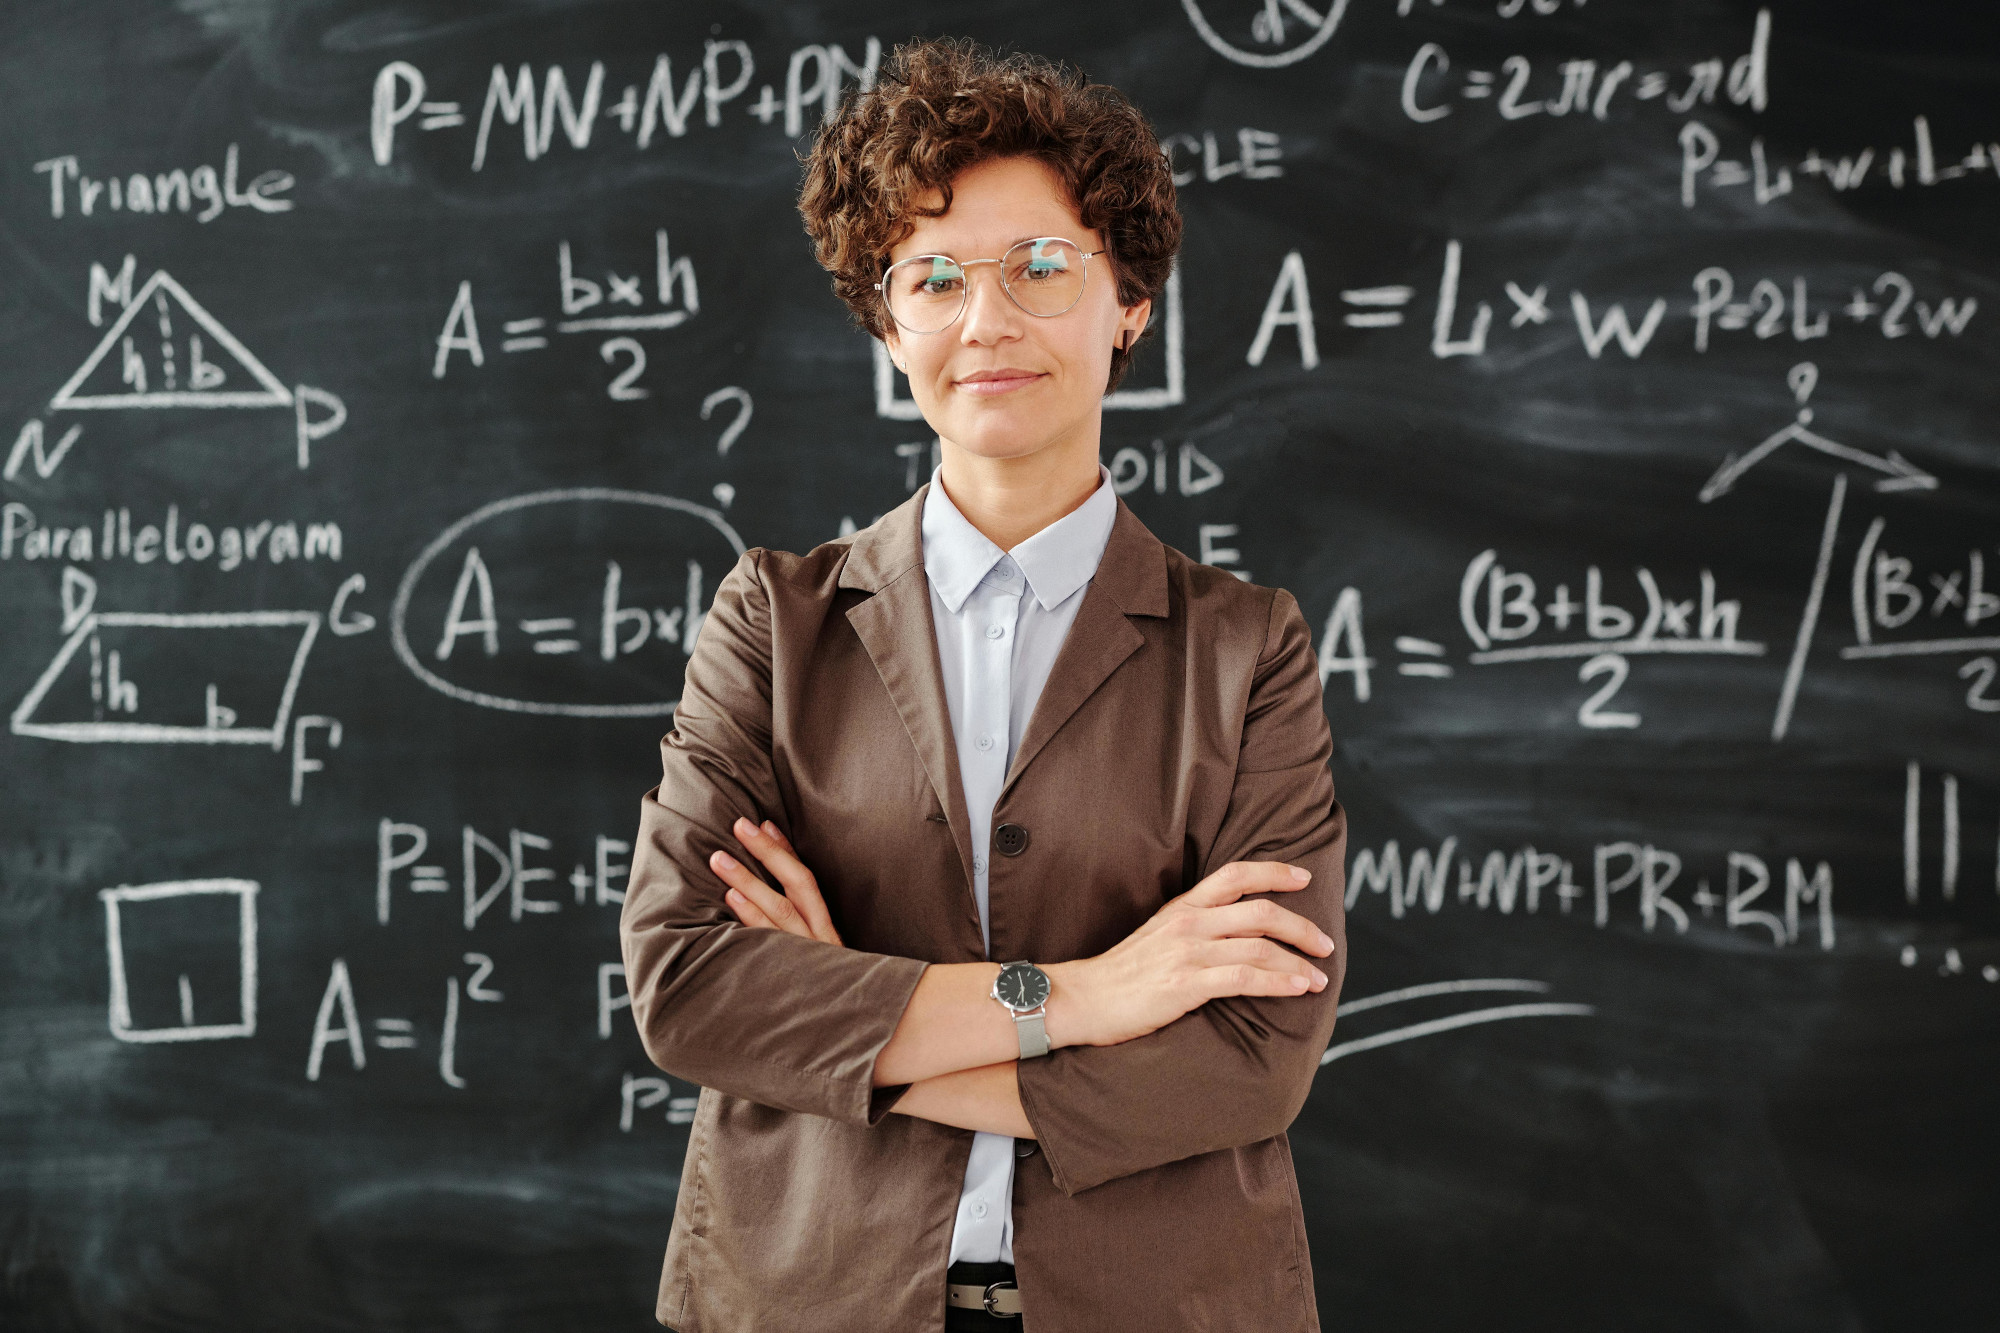 Eine Lehrerin steht mit verschränkten Armen vor einer Tafel und lächelt. Auf der Tafel sieht man mathematische Formeln die mit Kreide geschrieben wurden.